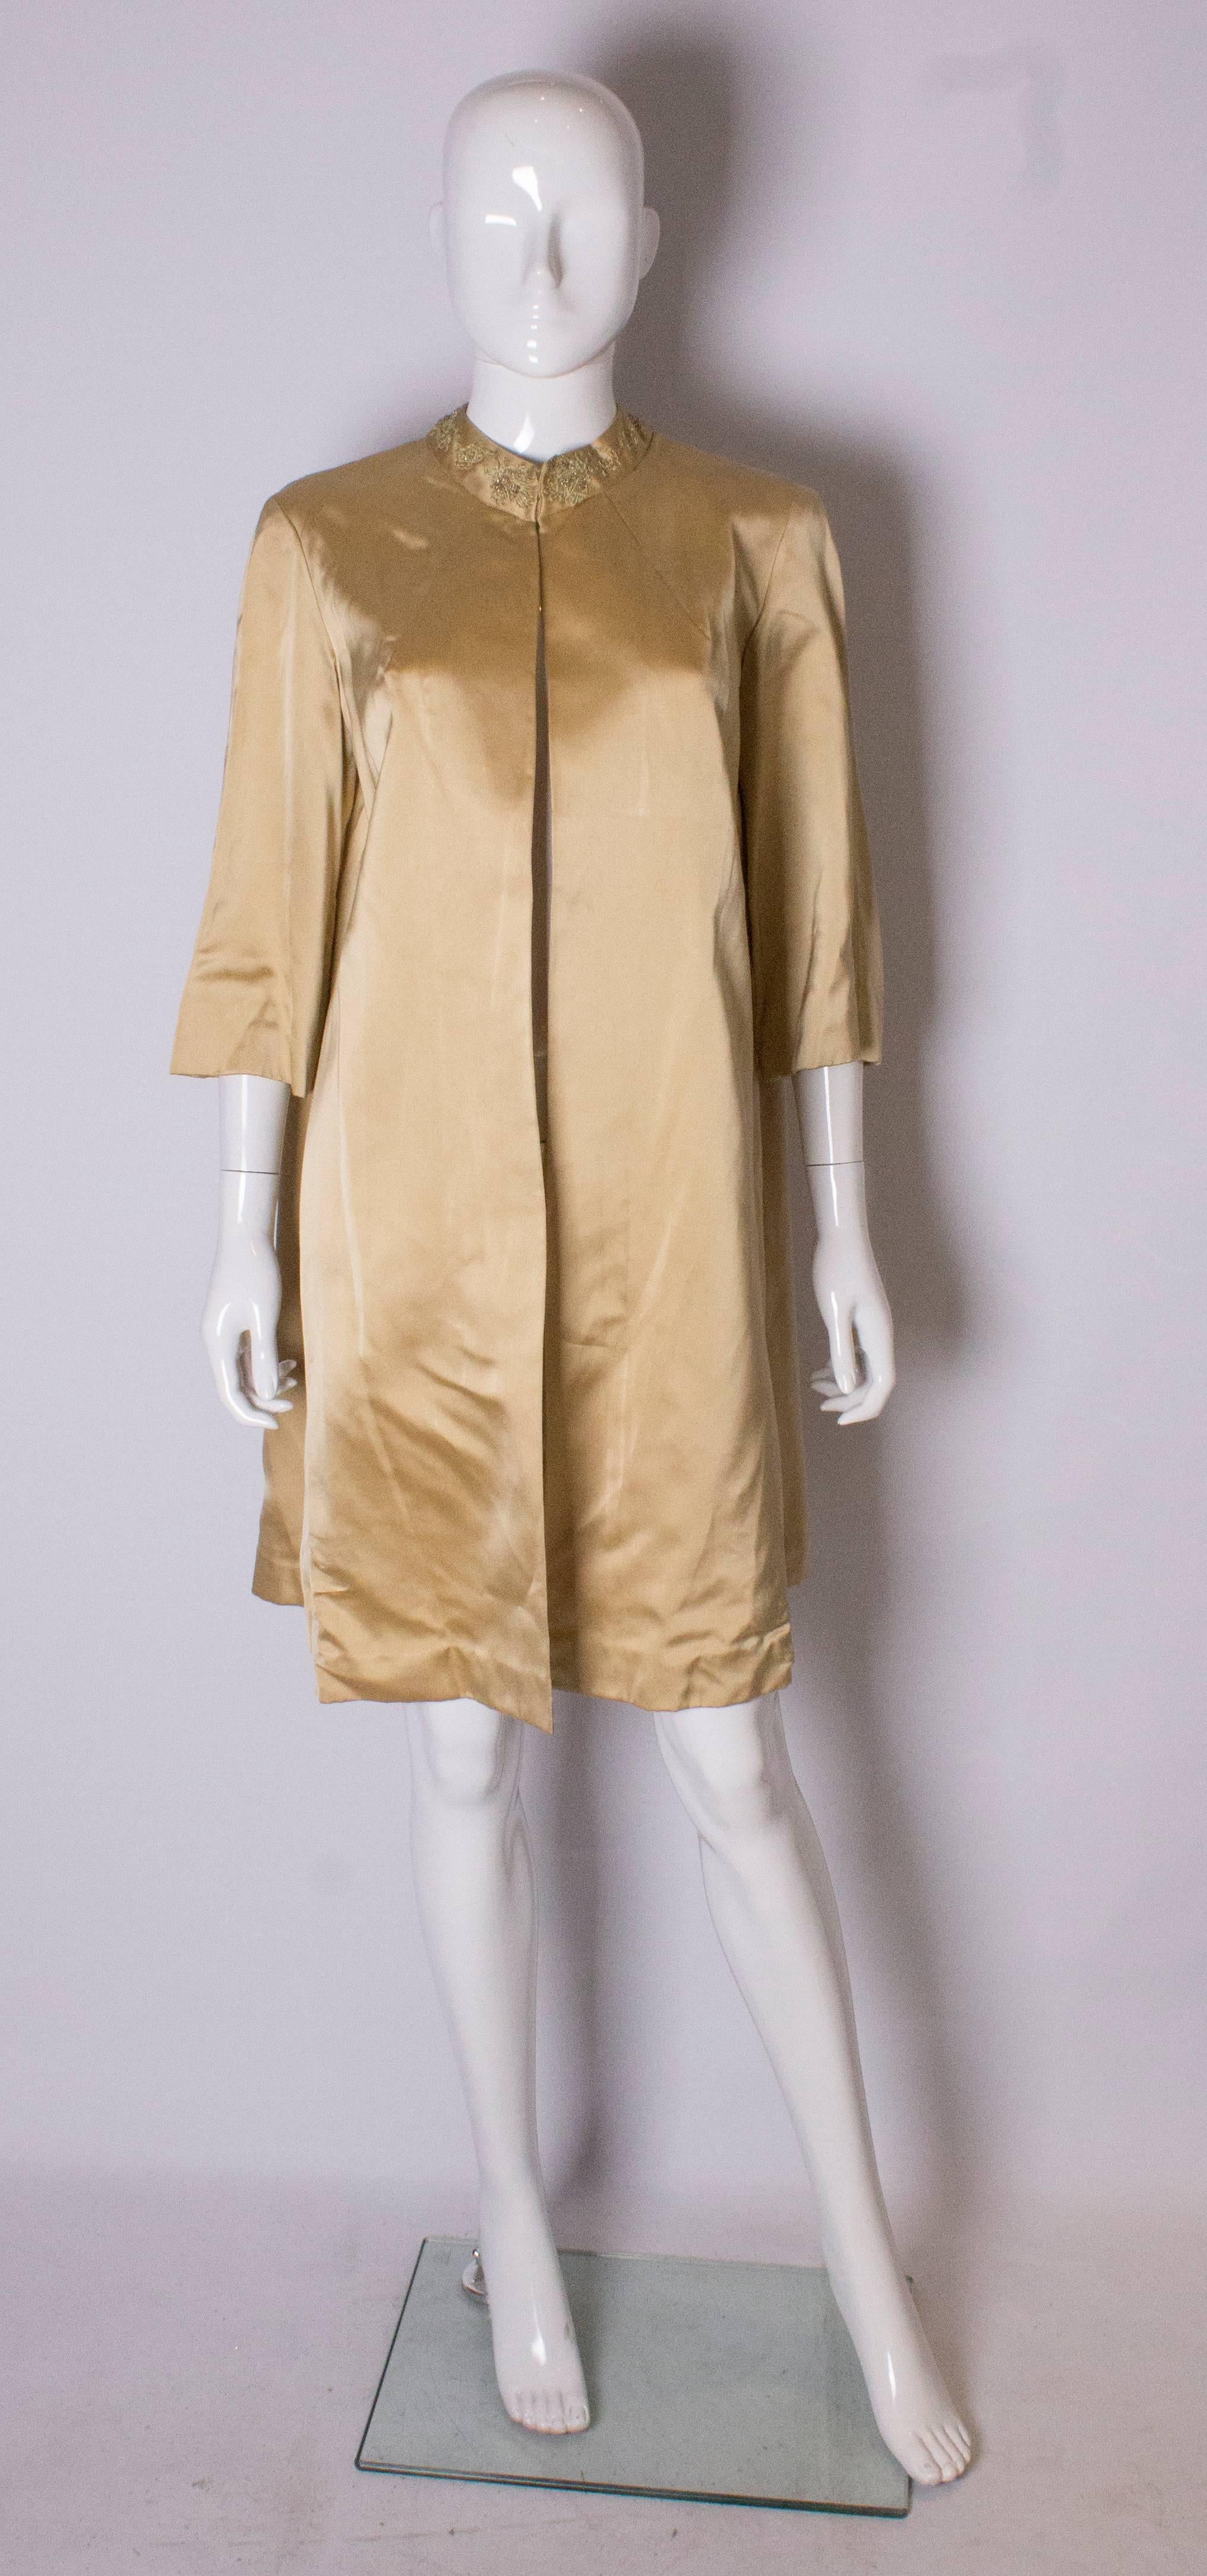 Ein toller Vintage-Mantel für Frühling/Sommer. Dieser Goldsatin  der Mantel hat einen bestickten Kragen, ist locker geschnitten und kann bis zu einer Oberweite von 42'' getragen werden